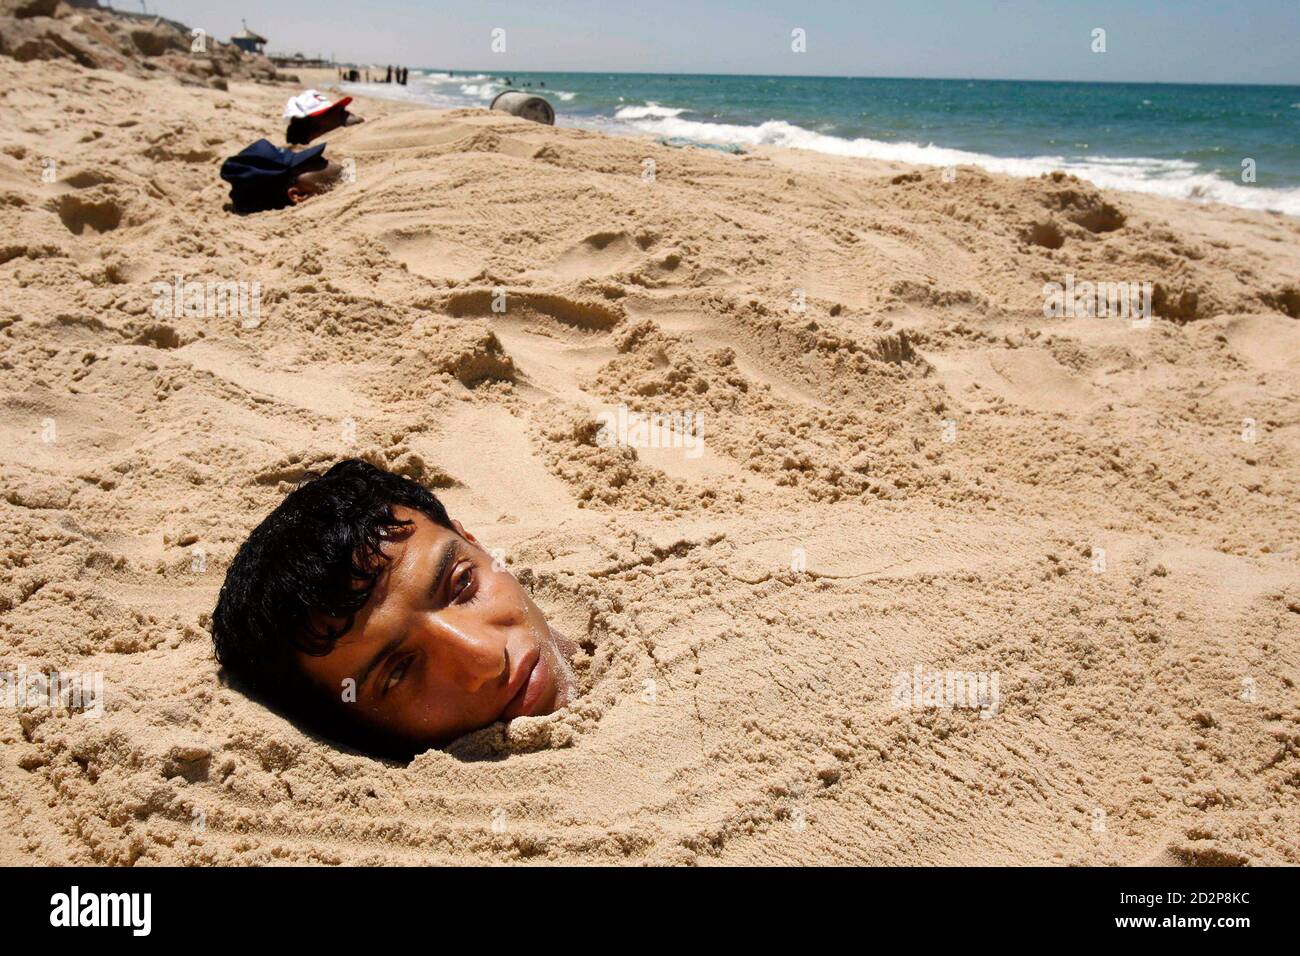 Между двумя реками люди прорыли. Человек в песке на пляже. Человек закопанный в песок на пляже.